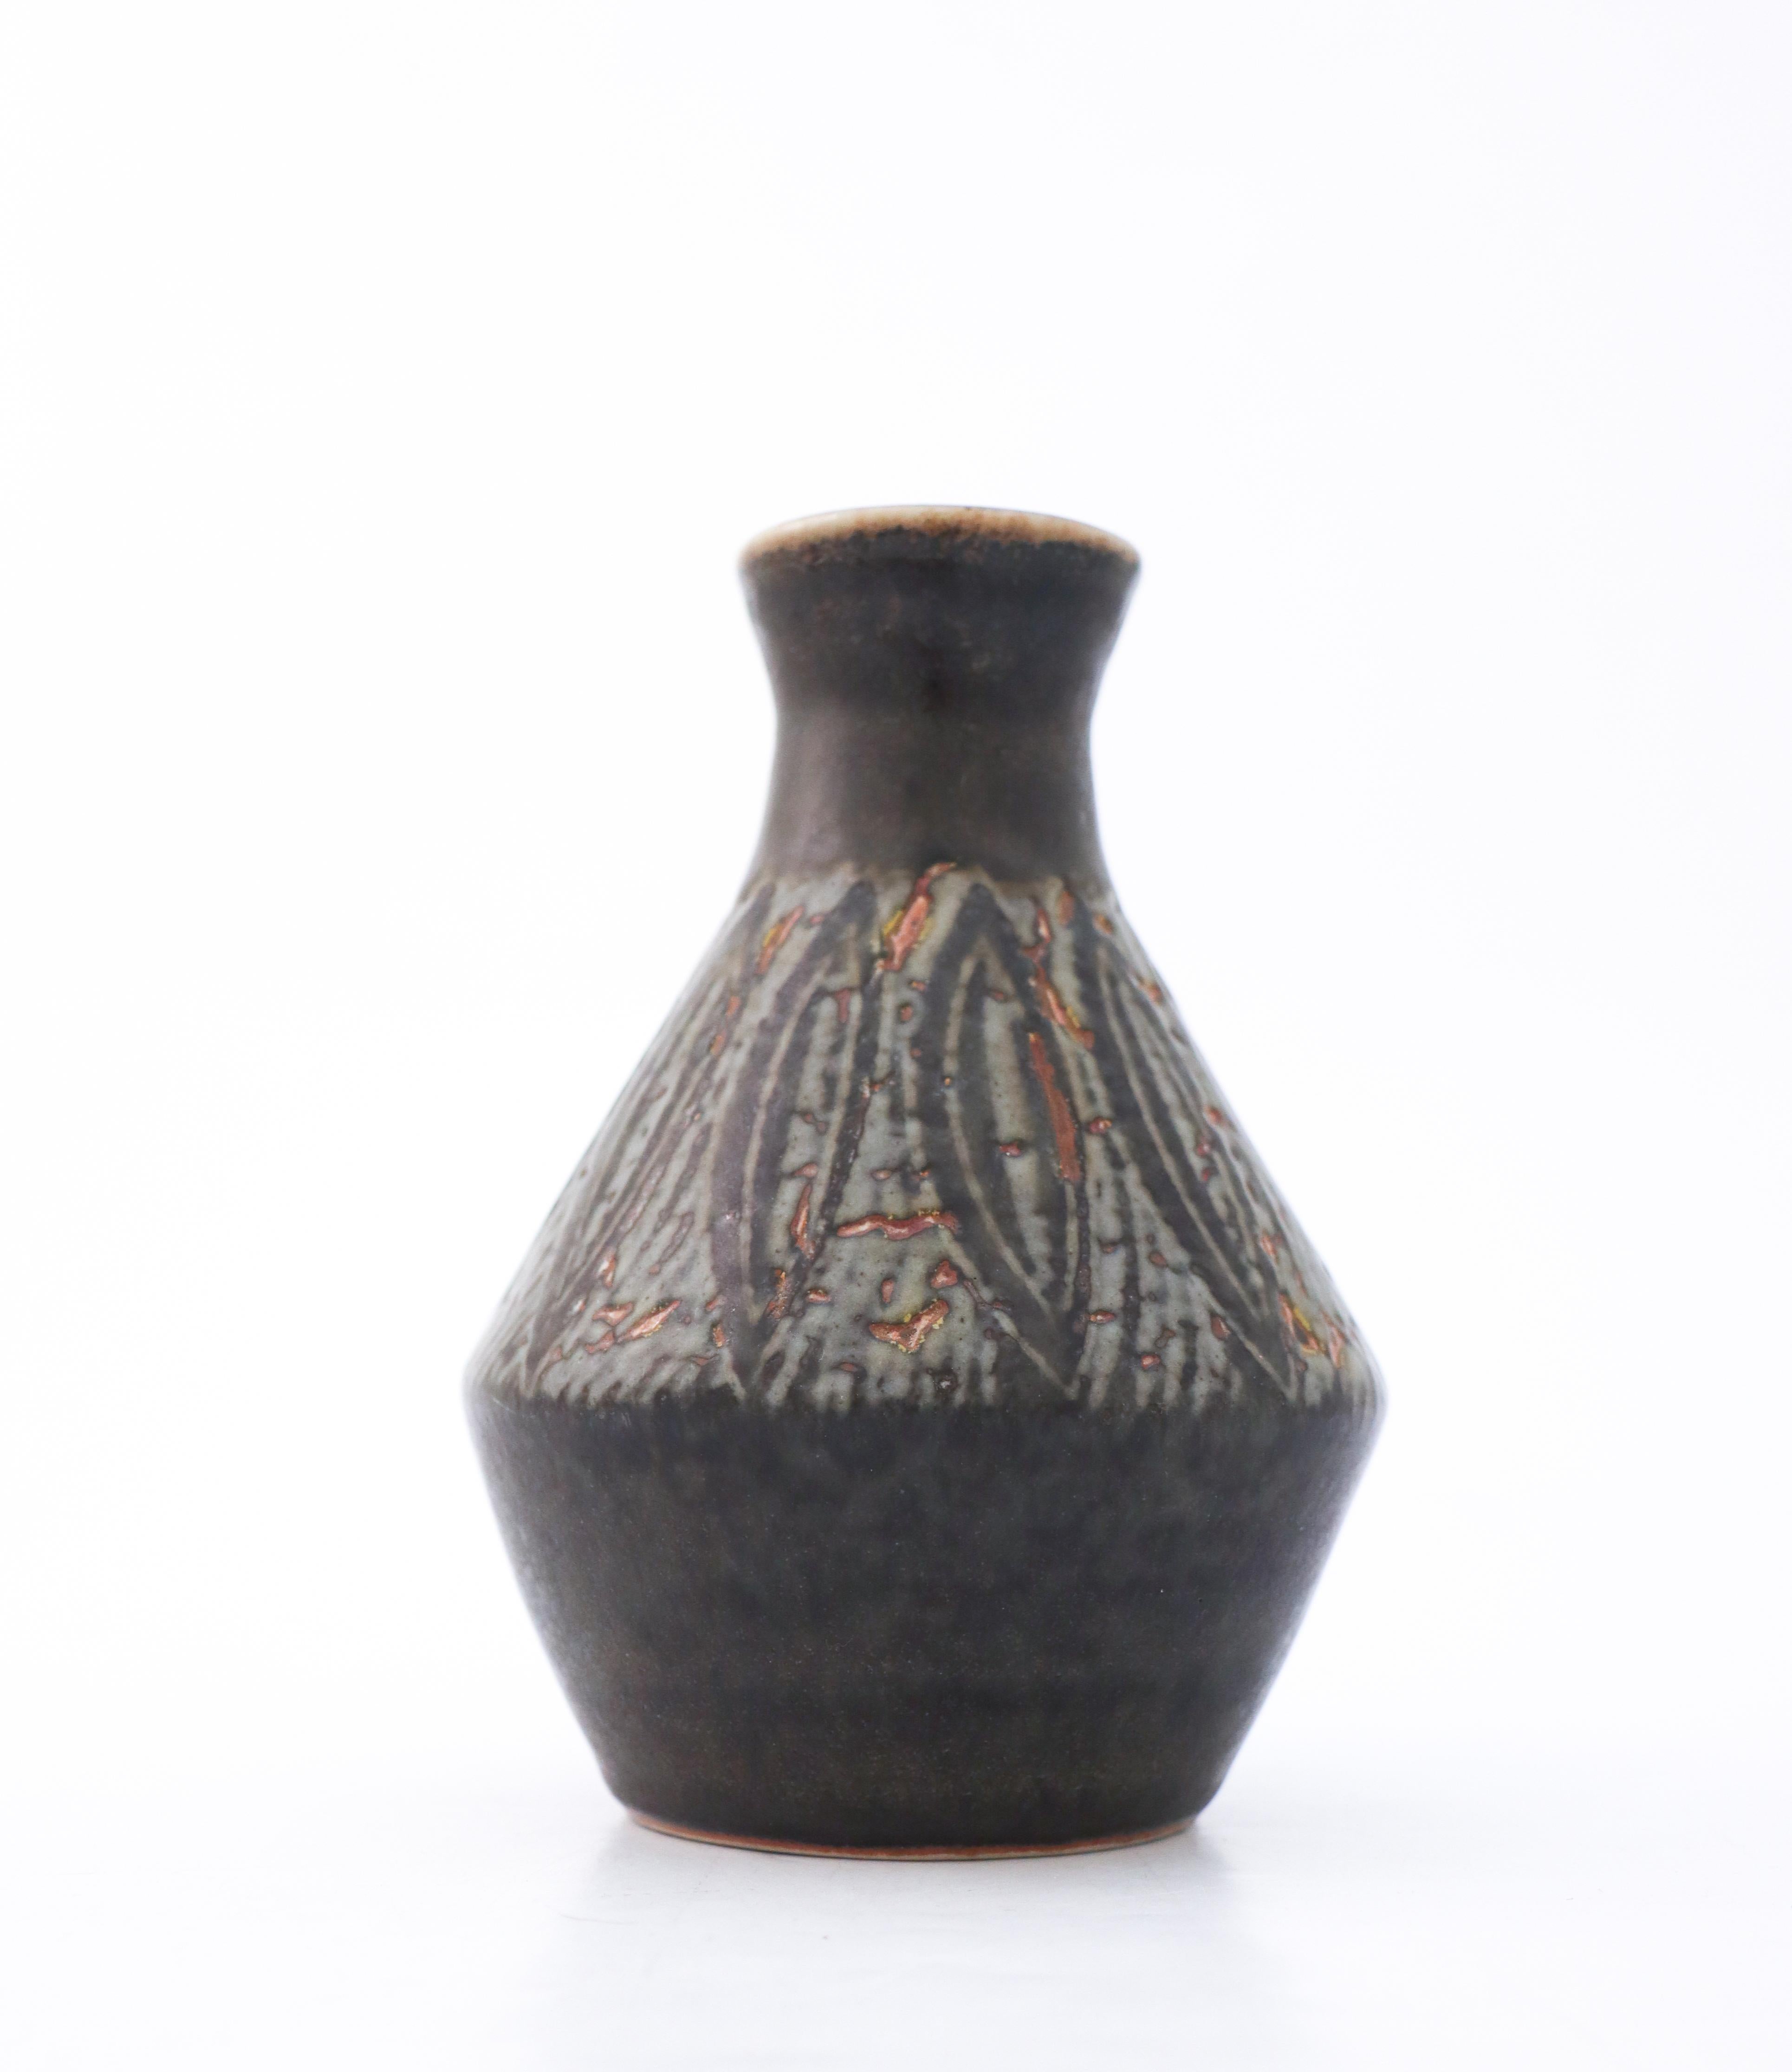 Un vase noir avec une légère coloration brune au fond, conçu par Carl-Harry Stålhane à Rörstrand. Il mesure 21 cm de haut et est en très bon état, à l'exception de quelques rayures mineures. Il est marqué comme étant de 2ème qualité. 

Carl-Harry